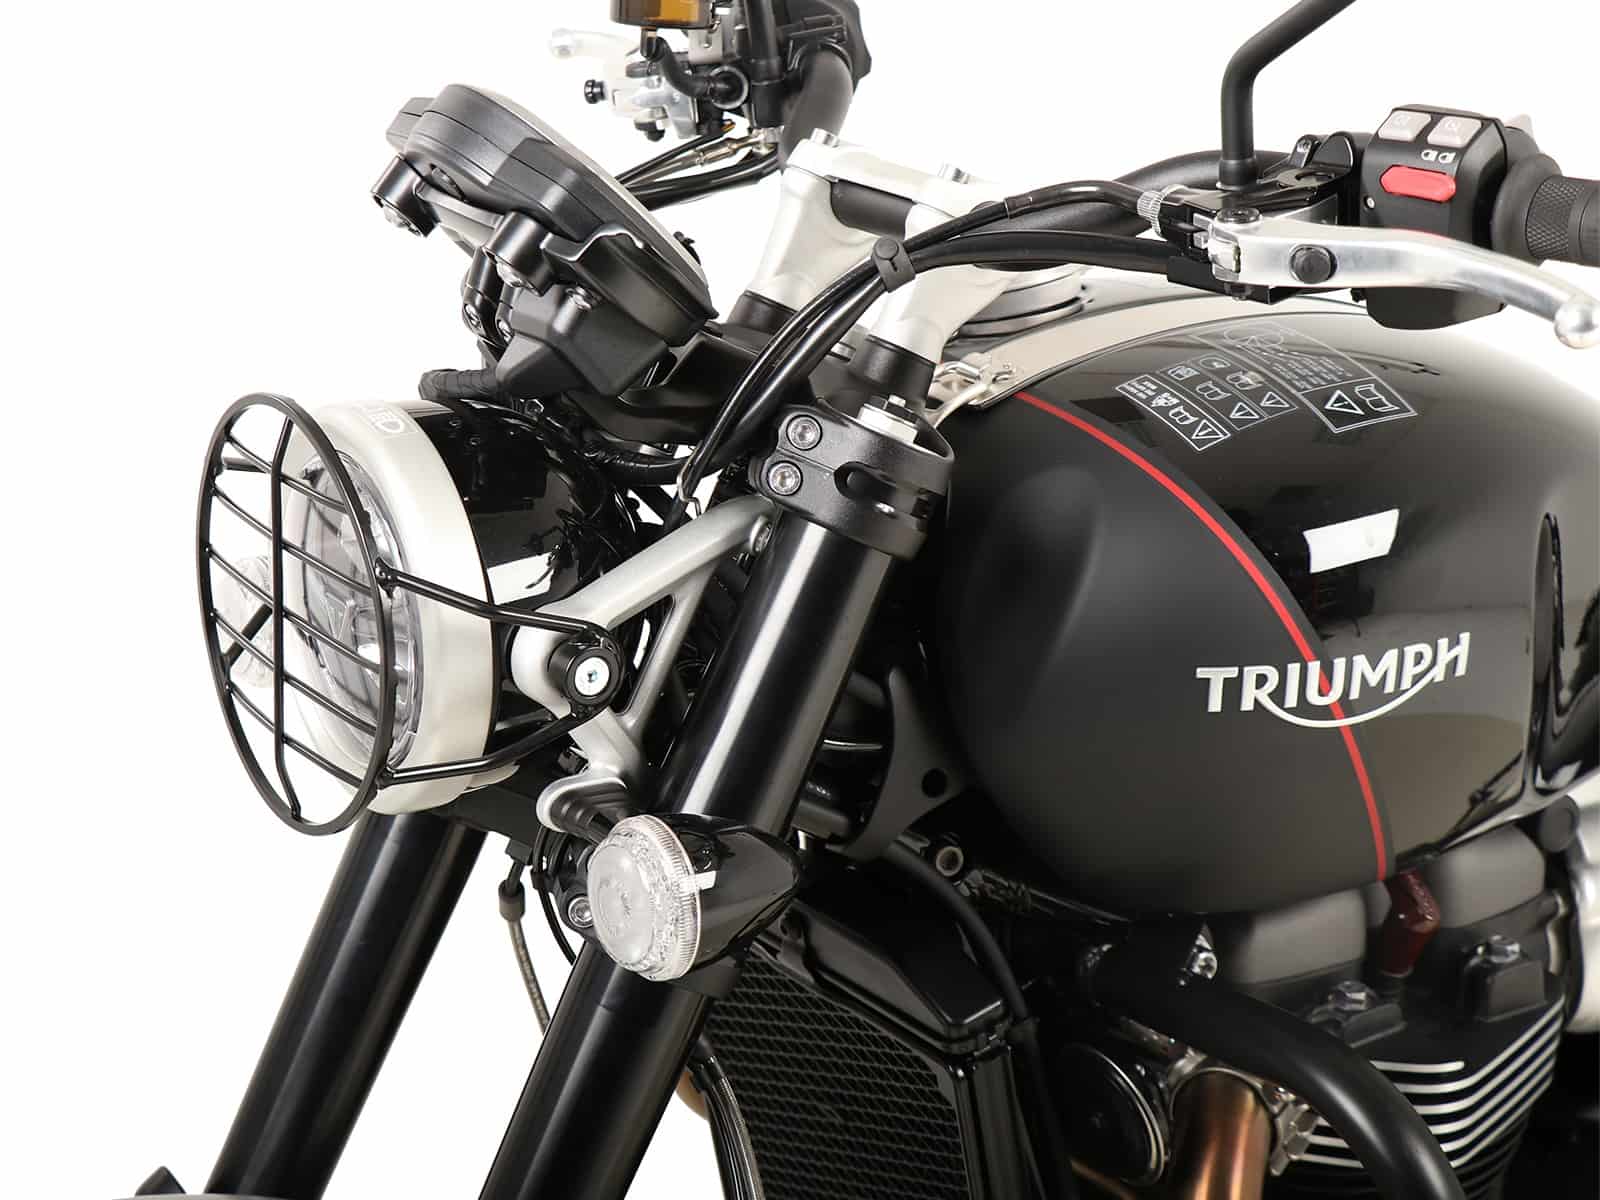 Headlight grill for Triumph Triumph Scrambler 1200 XC (2019-)